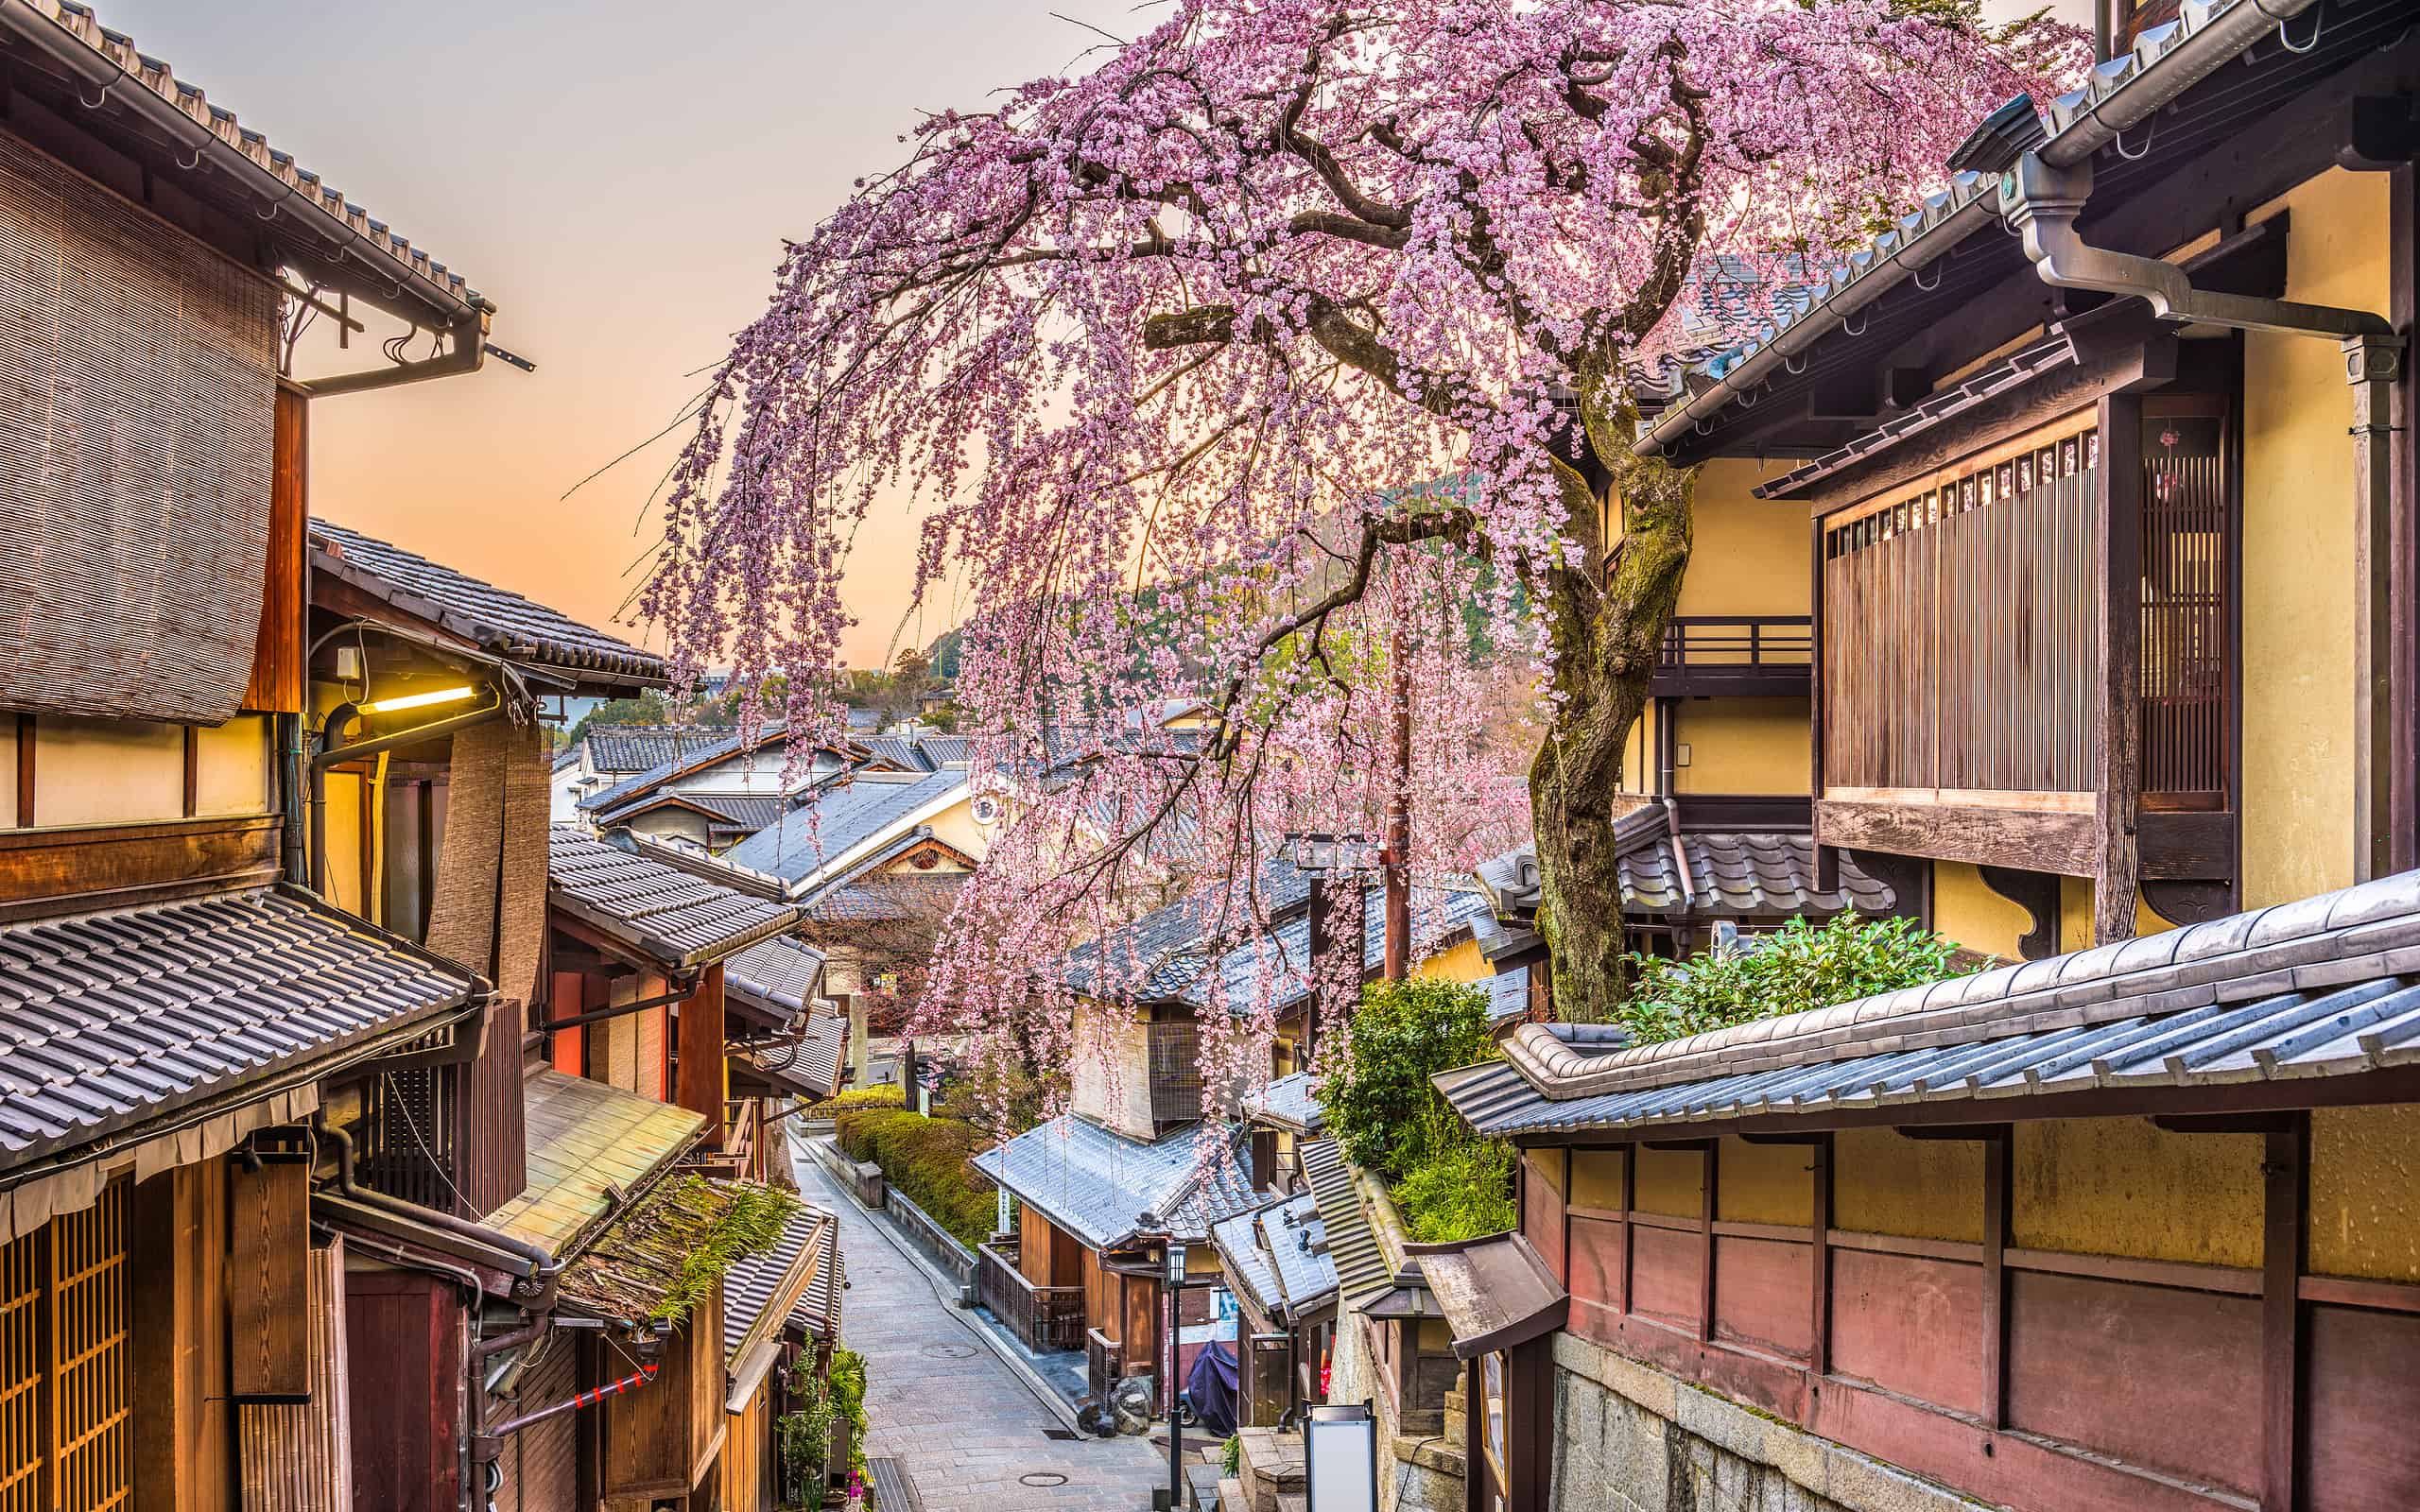 Kyoto, Japan in Spring